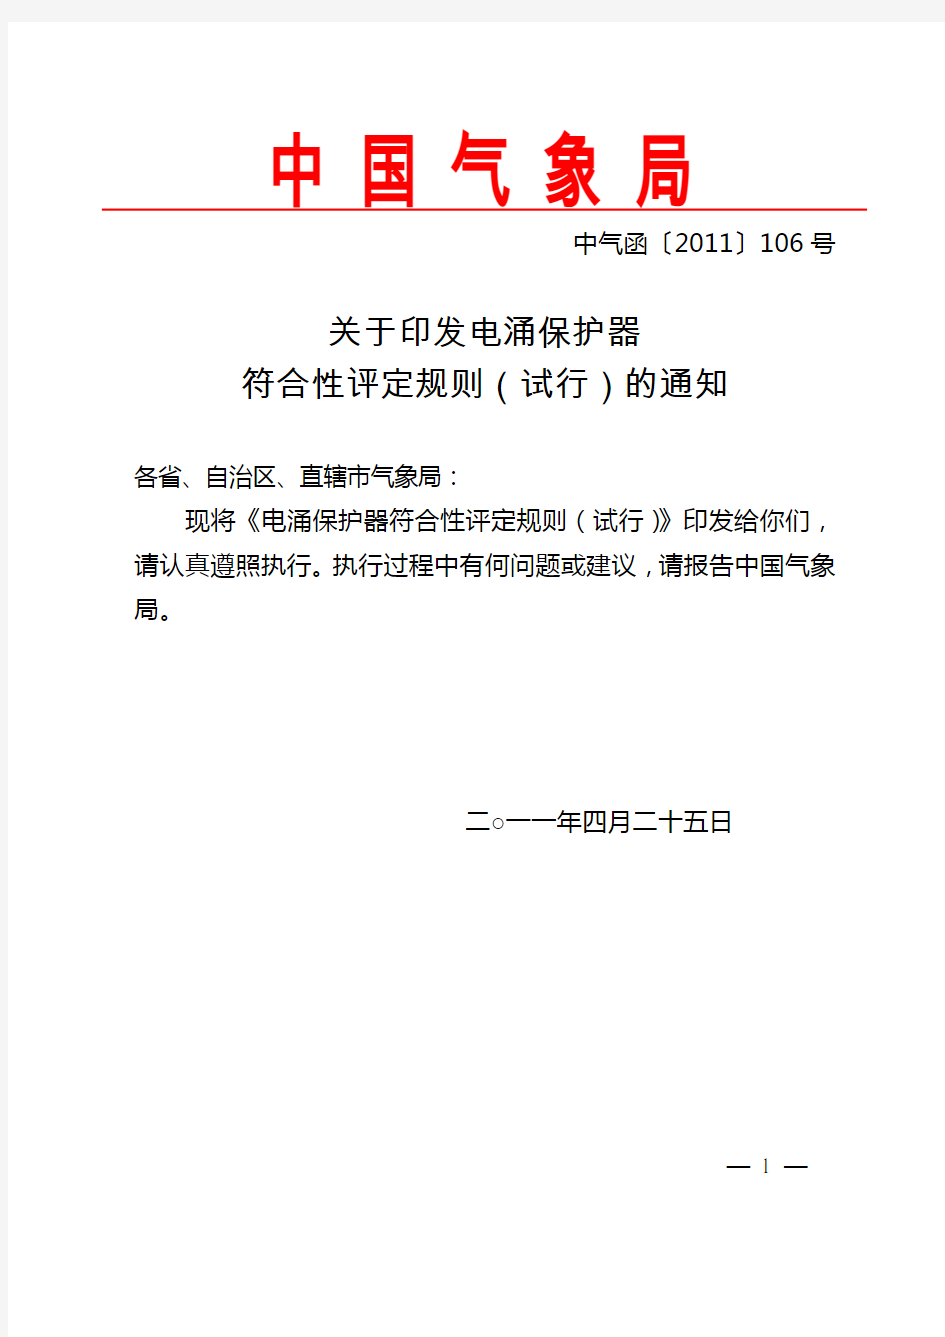 中国气象局-关于印发低压电涌保护器符合性评定